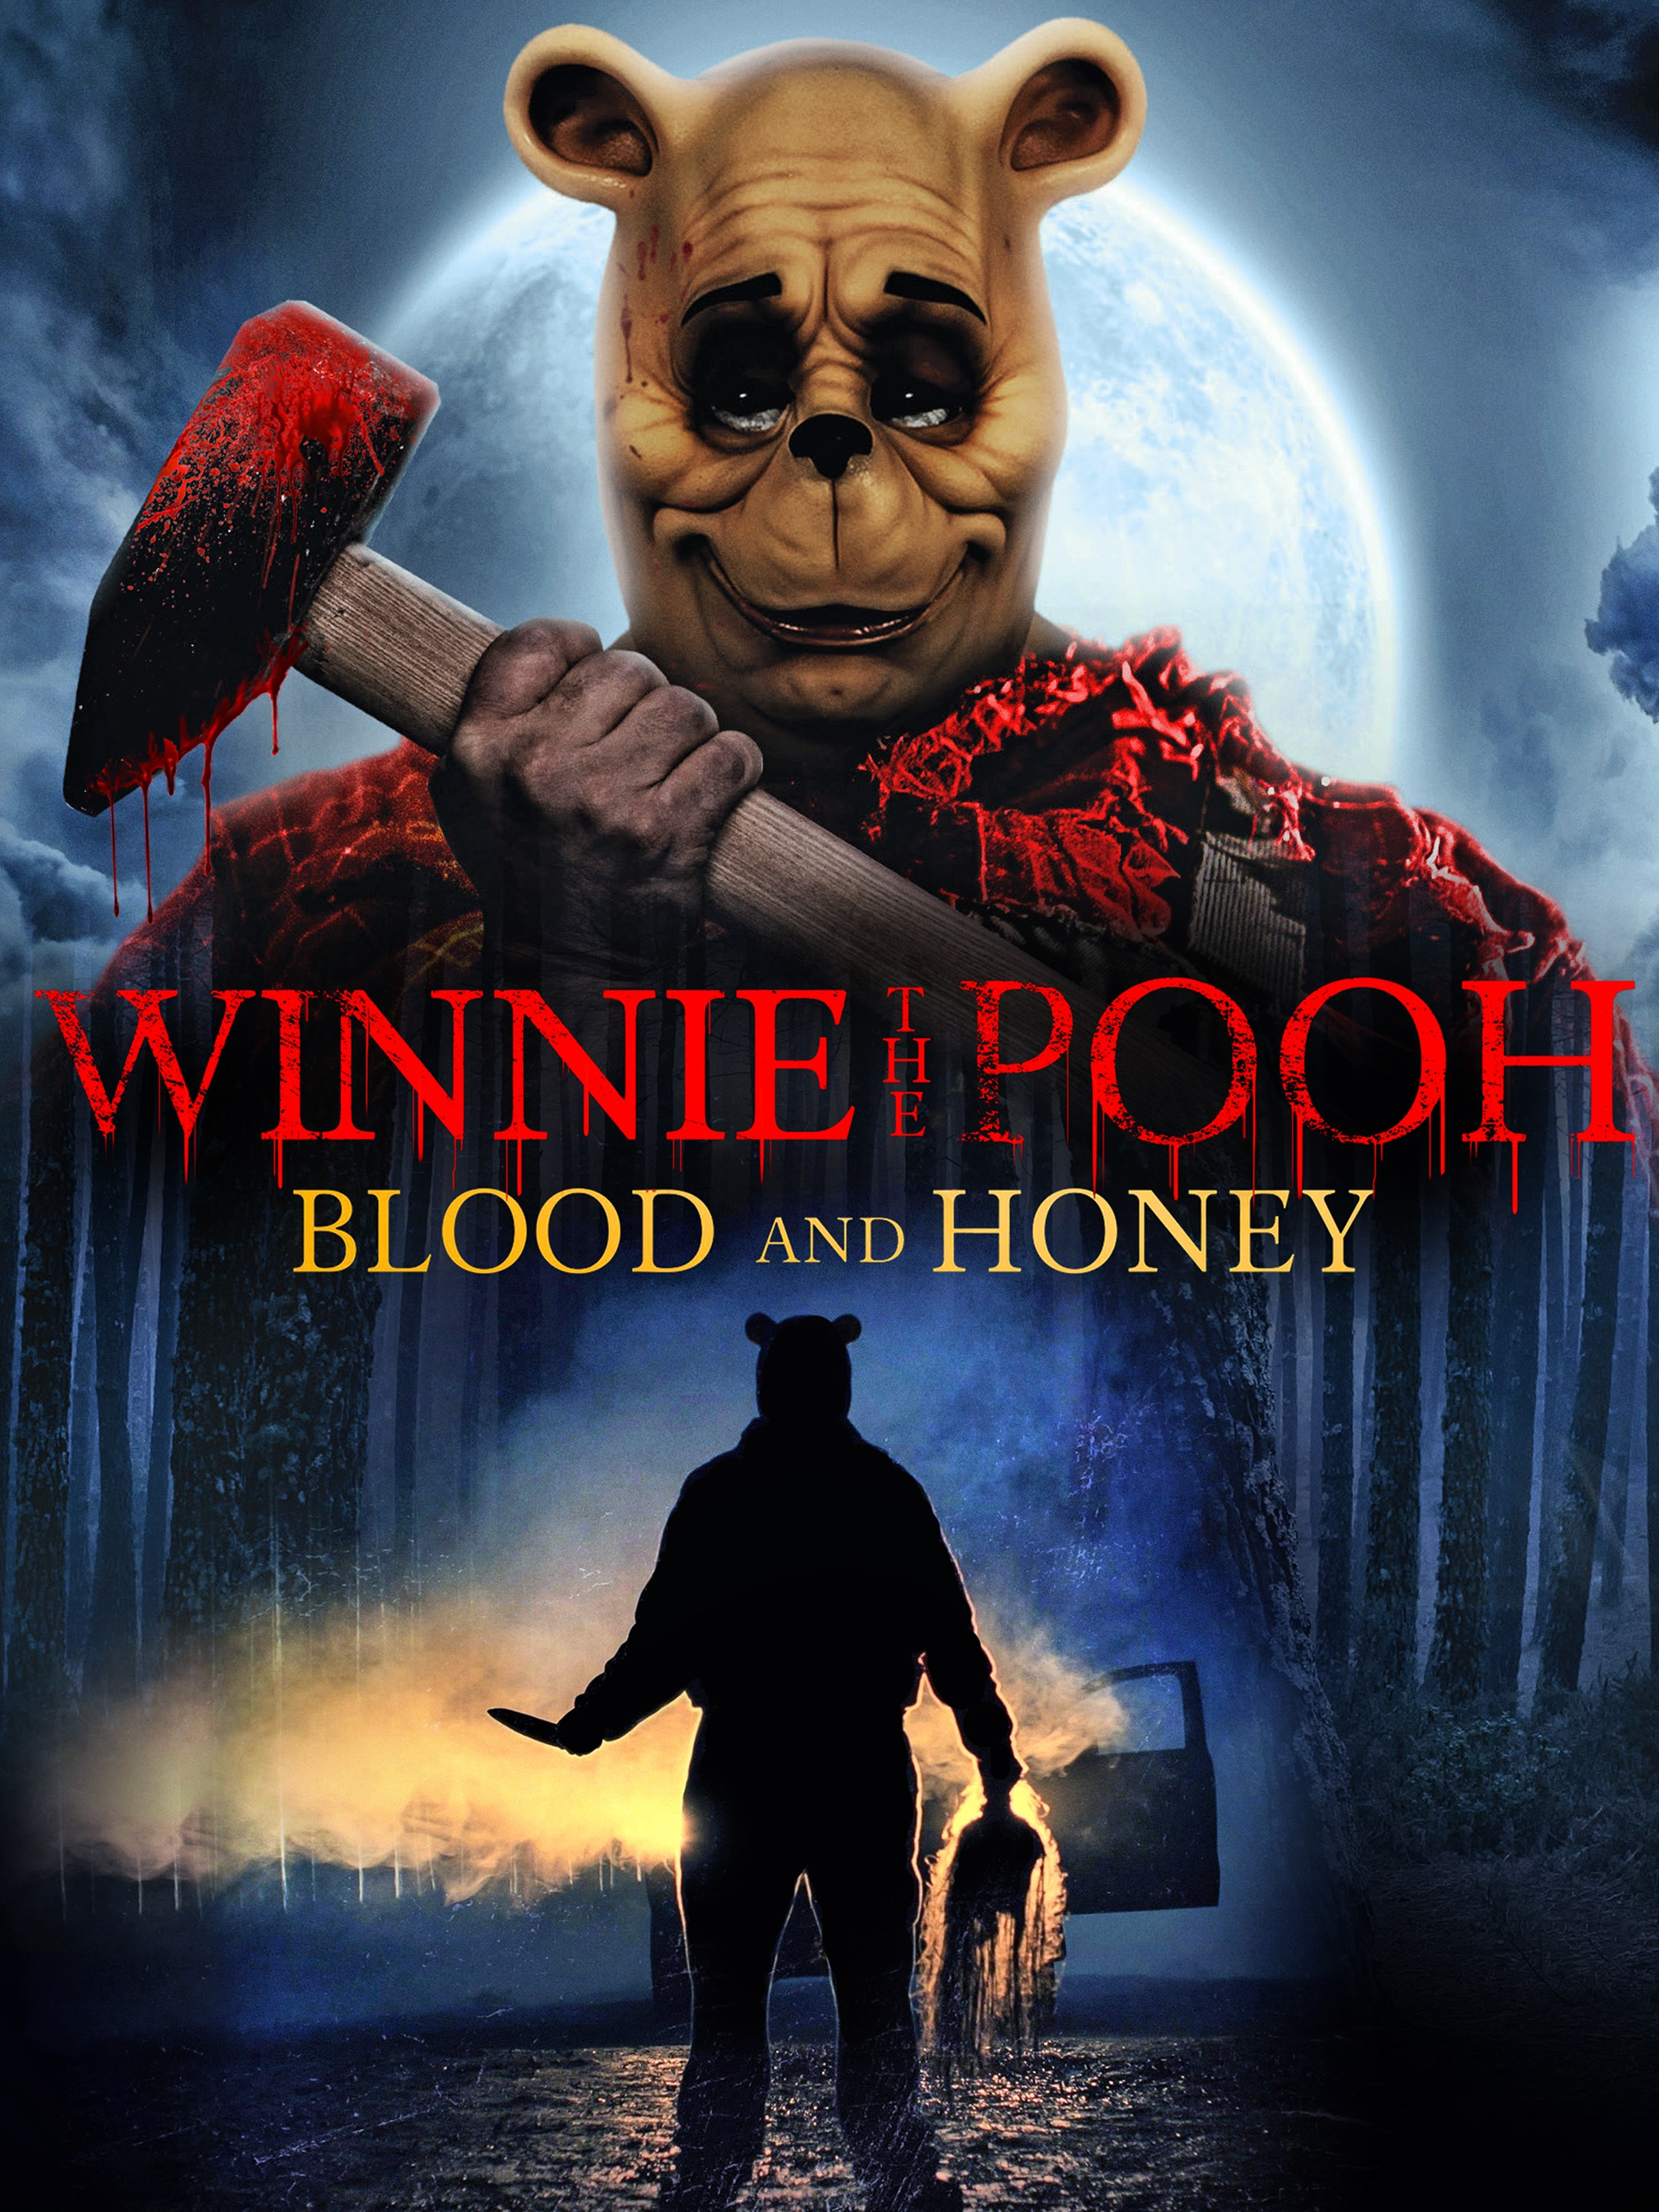 곰돌이 푸가 살인마로 등장하는 영화 ‘곰돌이 푸: 피와 꿀’의 포스터